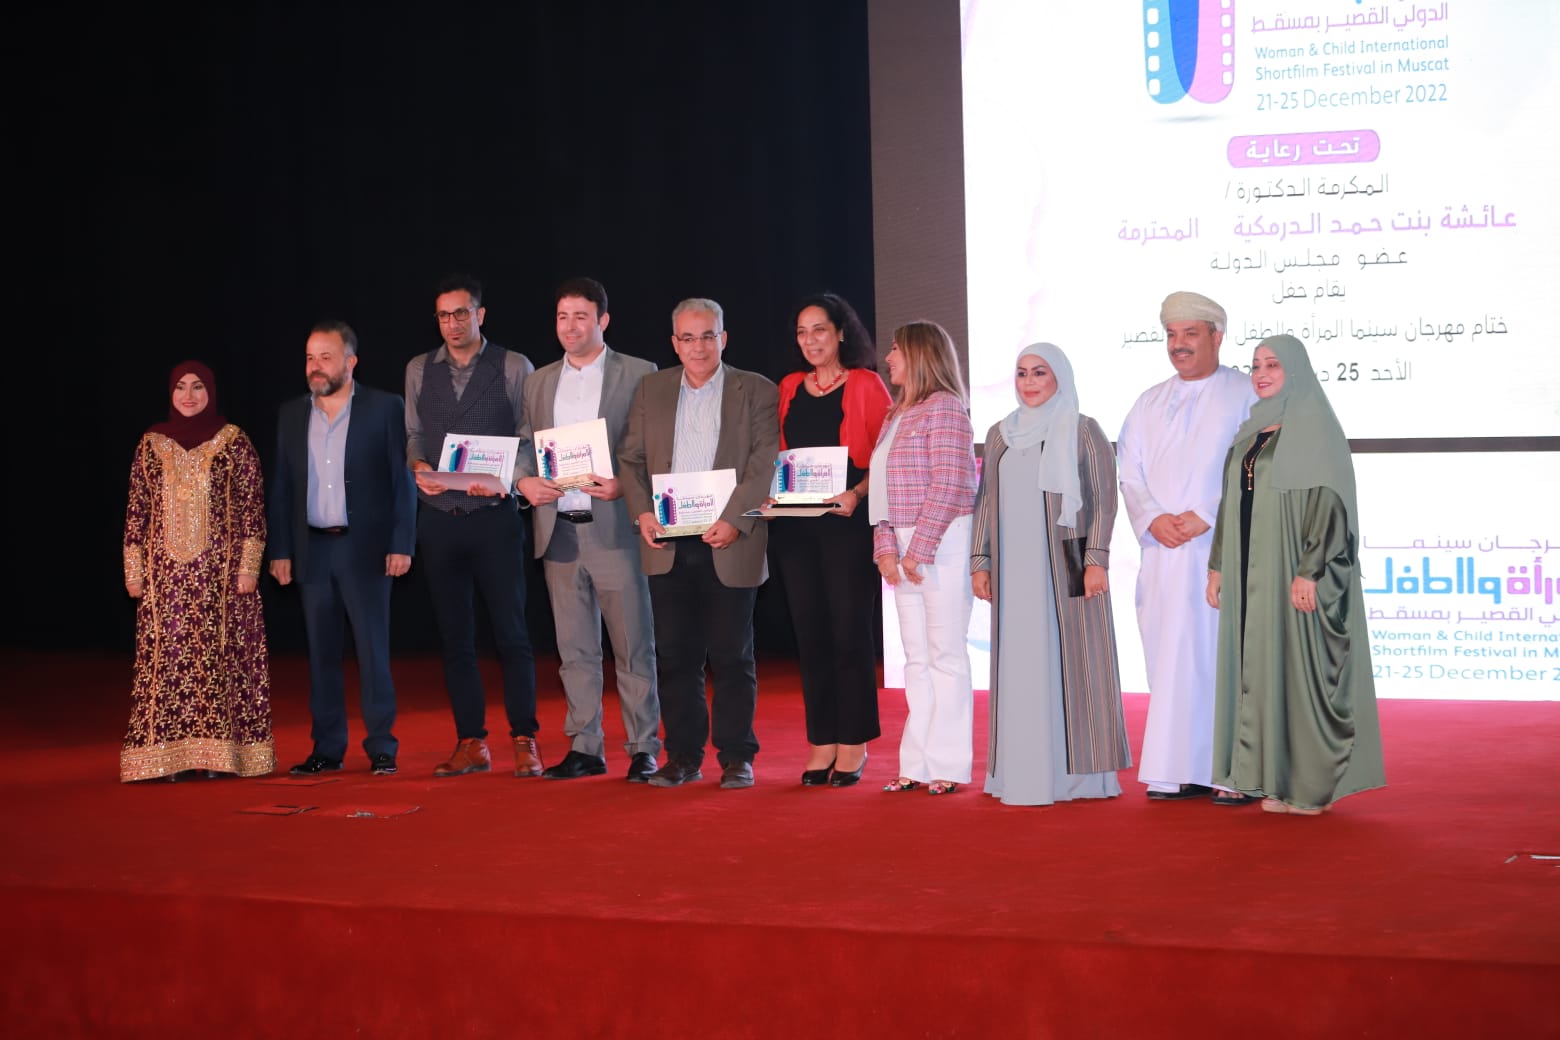 فيلم مصري (دير وارد) يفوز بجائزة أفضل فيلم روائي في مهرجان المرأة والطفل الدولي للأفلام القصيرة في مسقط (2)